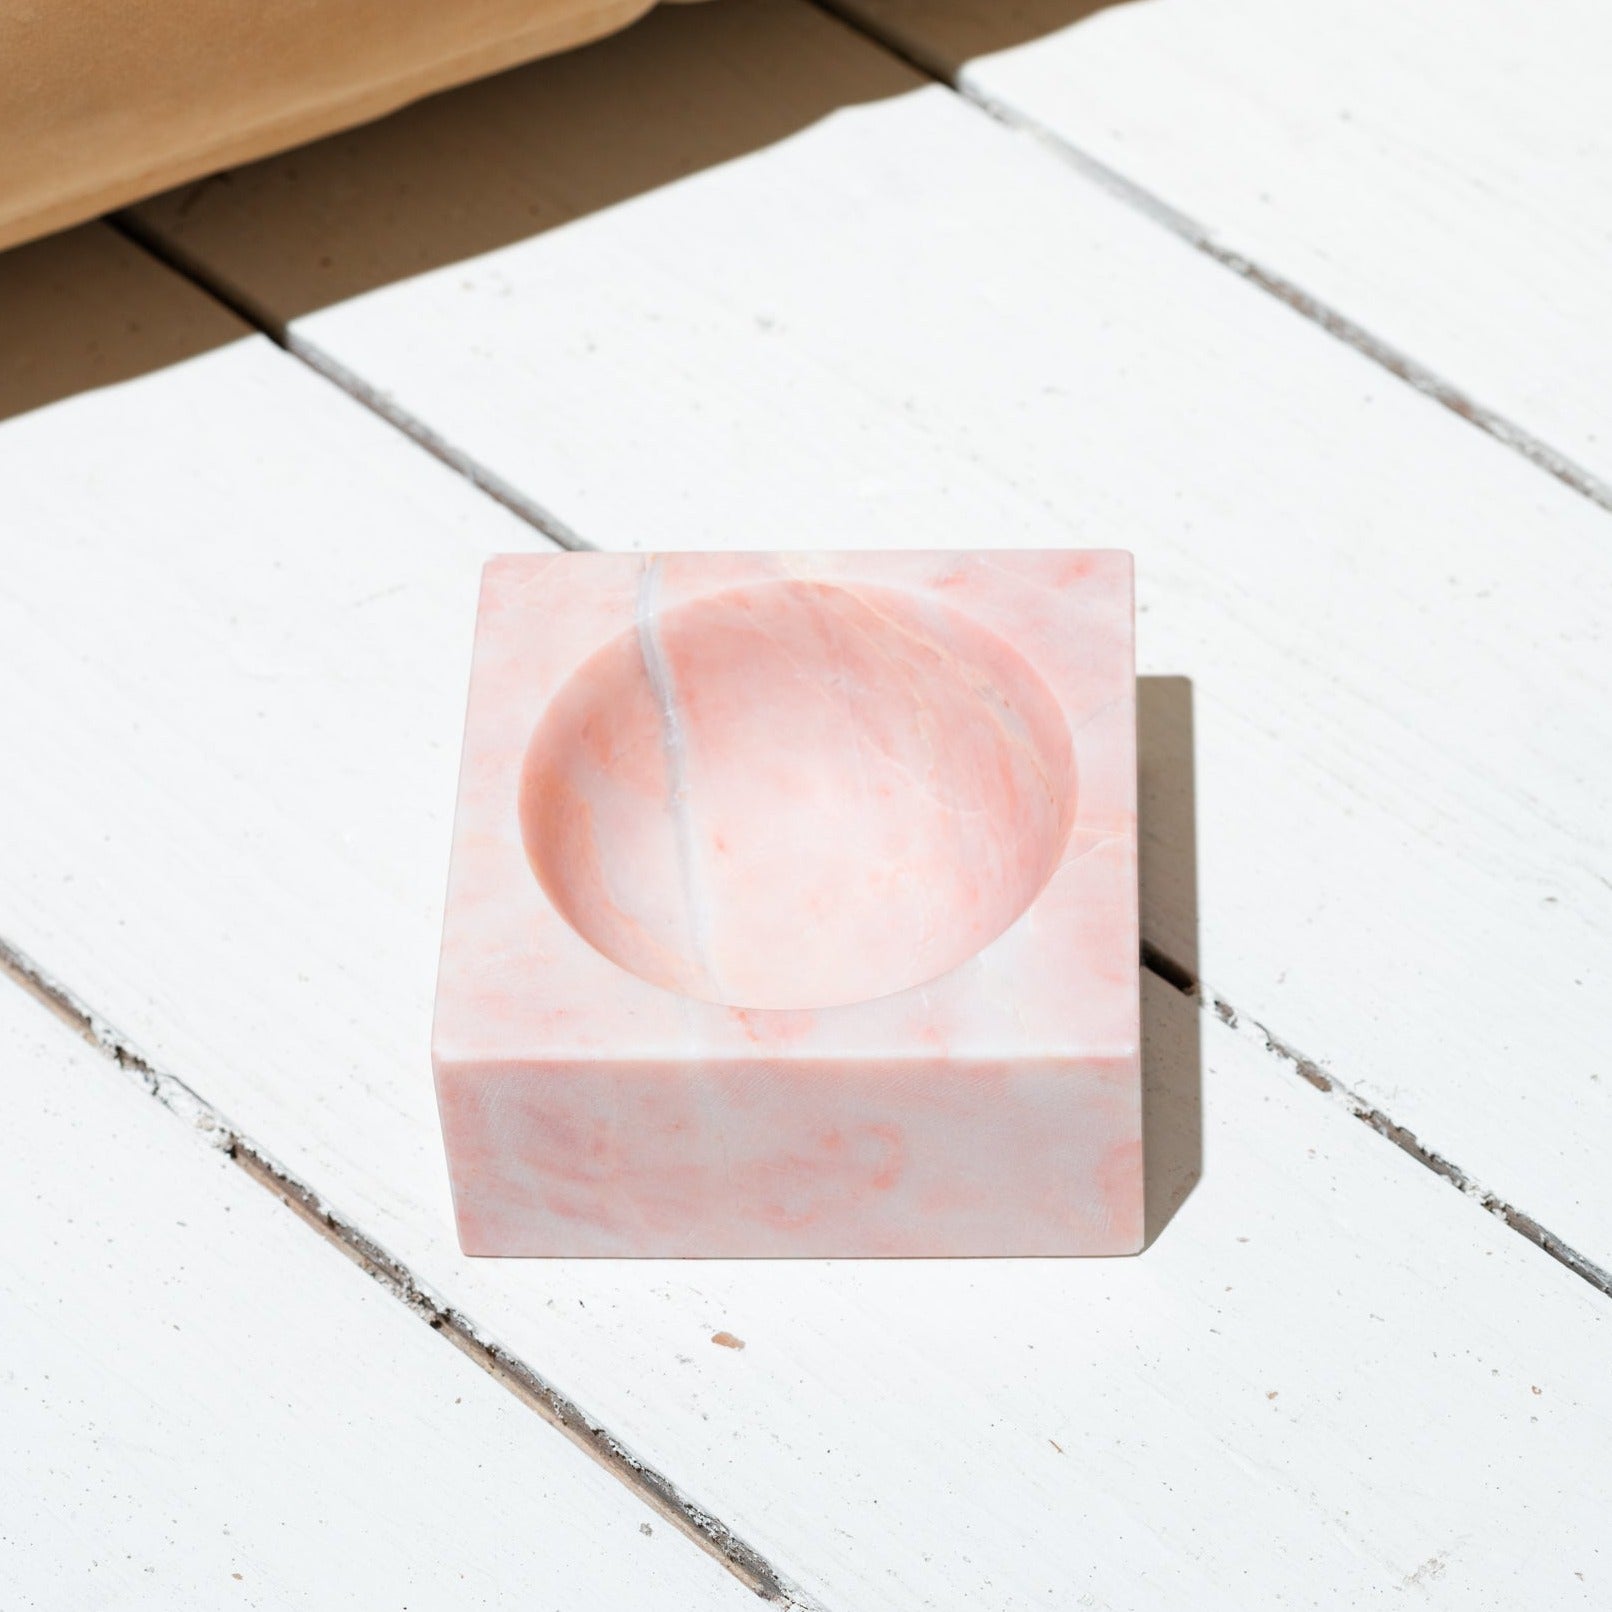 Pink Marble Block Bowl